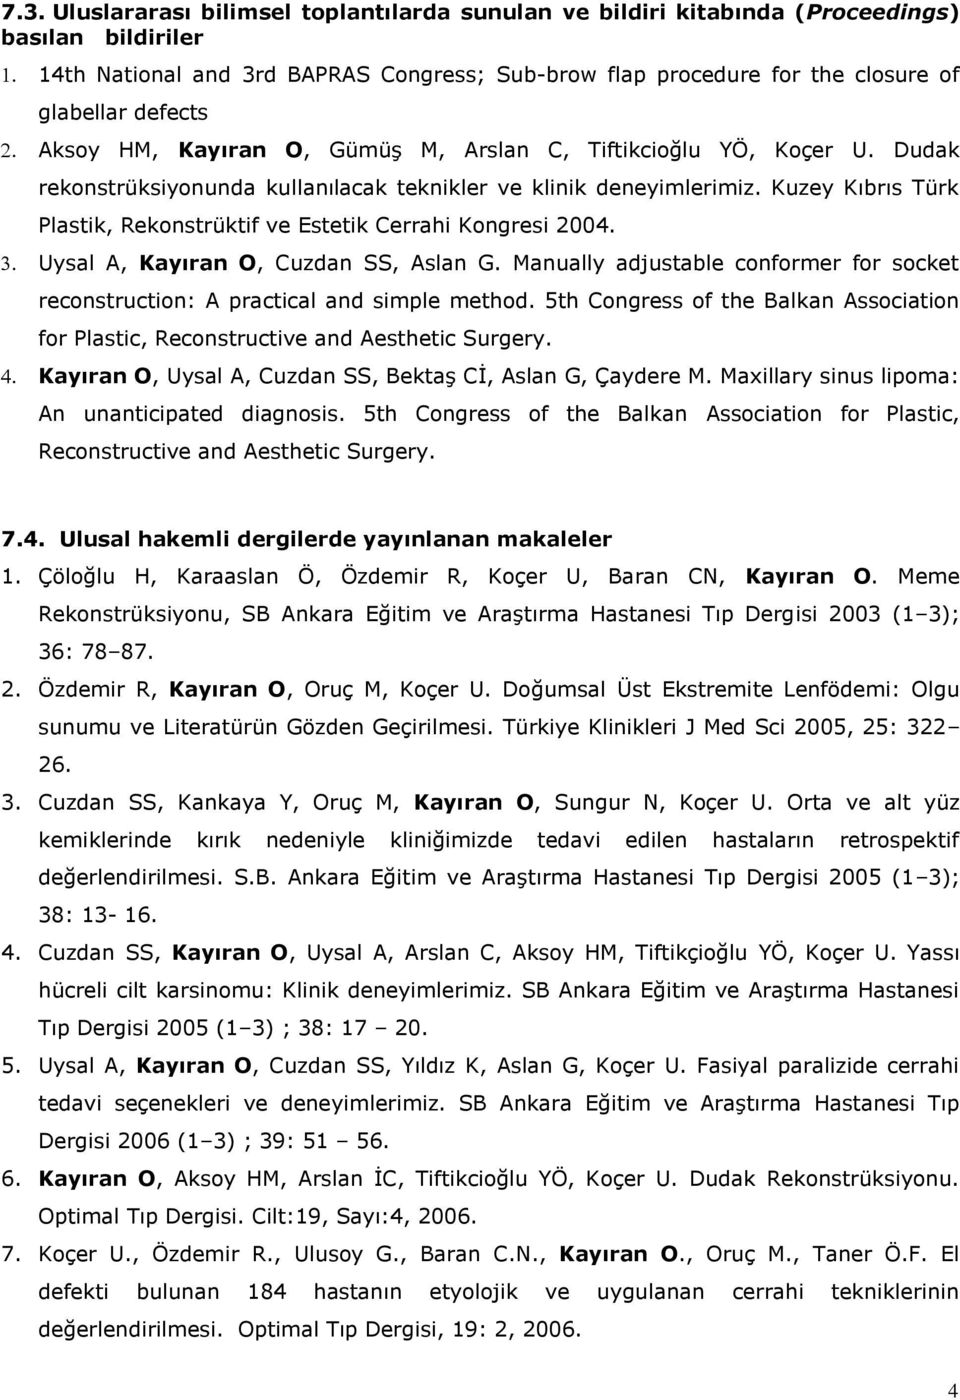 Kuzey Kıbrıs Türk Plastik, Rekonstrüktif ve Estetik Cerrahi Kongresi 2004. Uysal A, Kayıran O, Cuzdan SS, Aslan G.